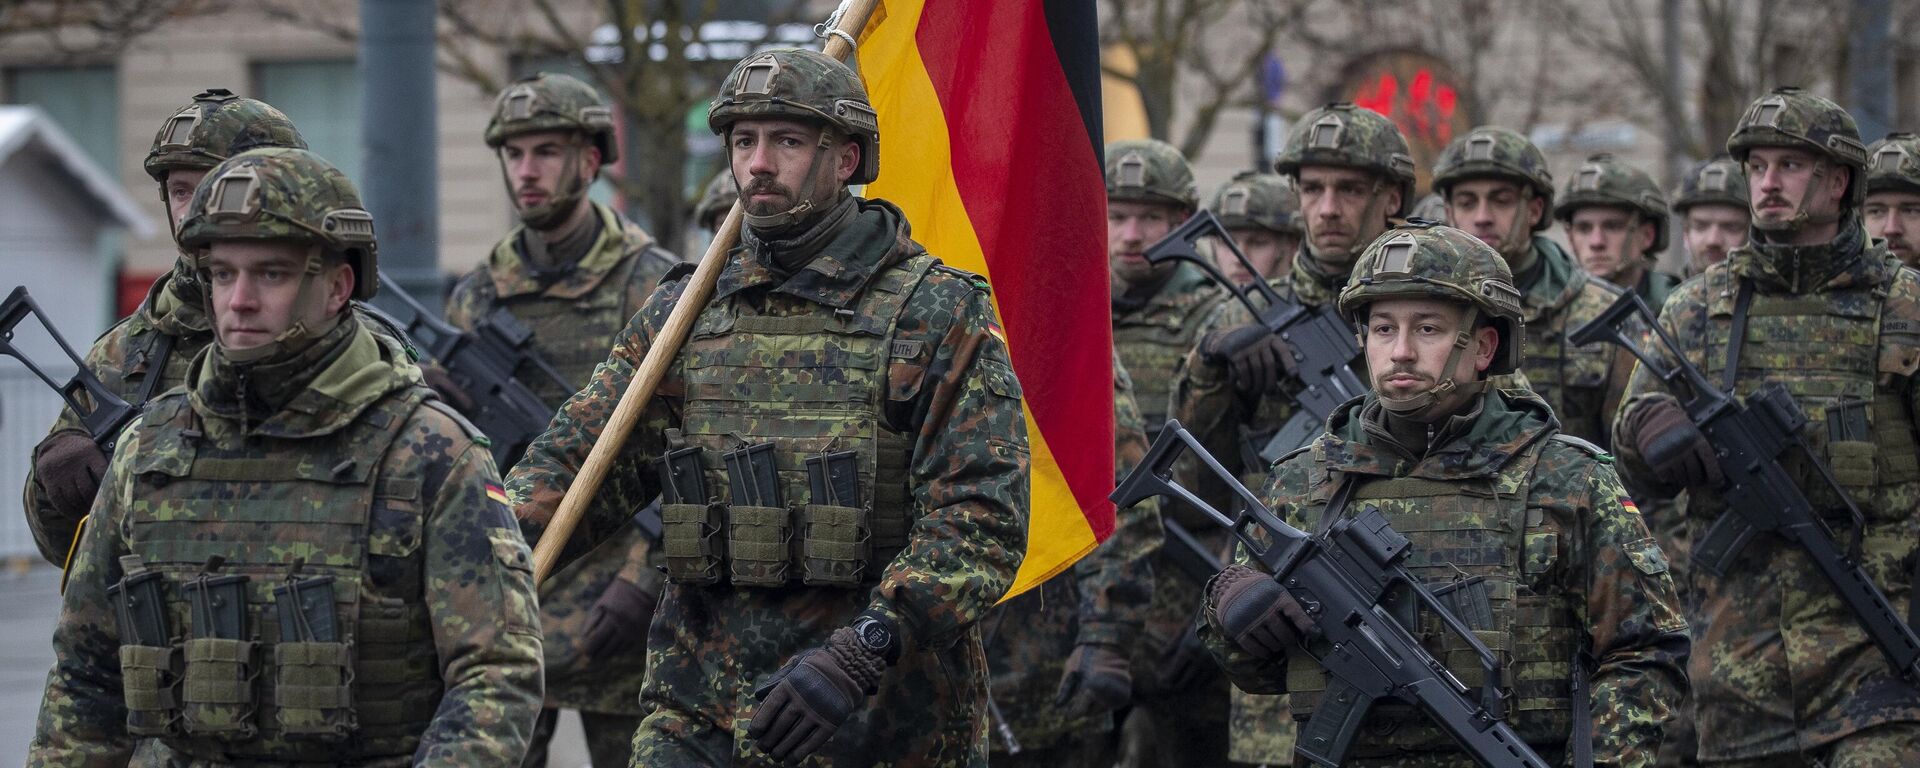 Membros do Exército alemão participam de um desfile militar que marca o 104º aniversário do Exército lituano, no Dia das Forças Armadas. Vilnius, Lituânia, 23 de novembro de 2022 - Sputnik Brasil, 1920, 14.06.2023